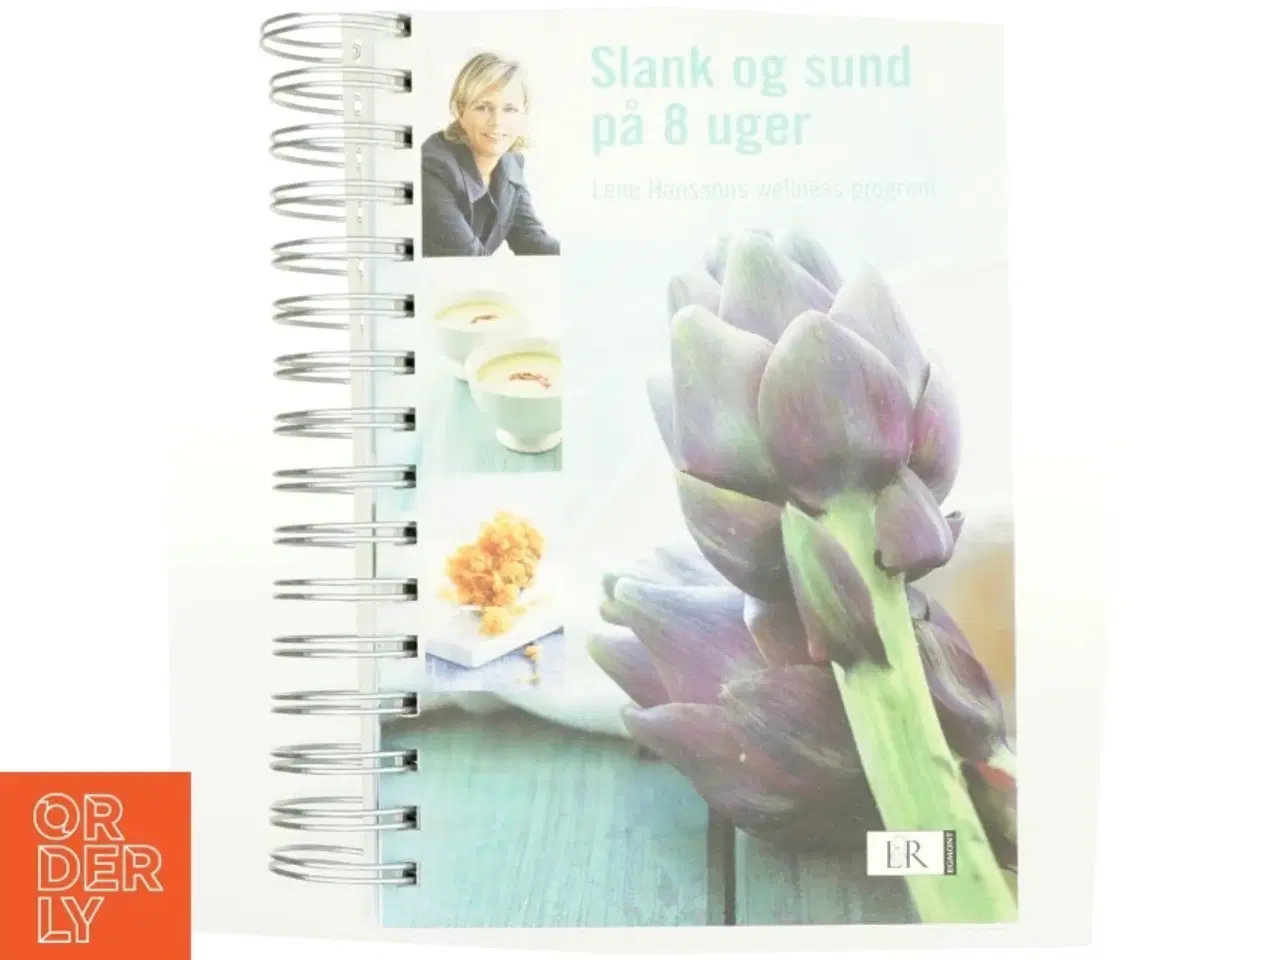 Billede 1 - Slank og sund på 8 uger : Lene Hanssons wellness program af Lene Hansson (Bog)